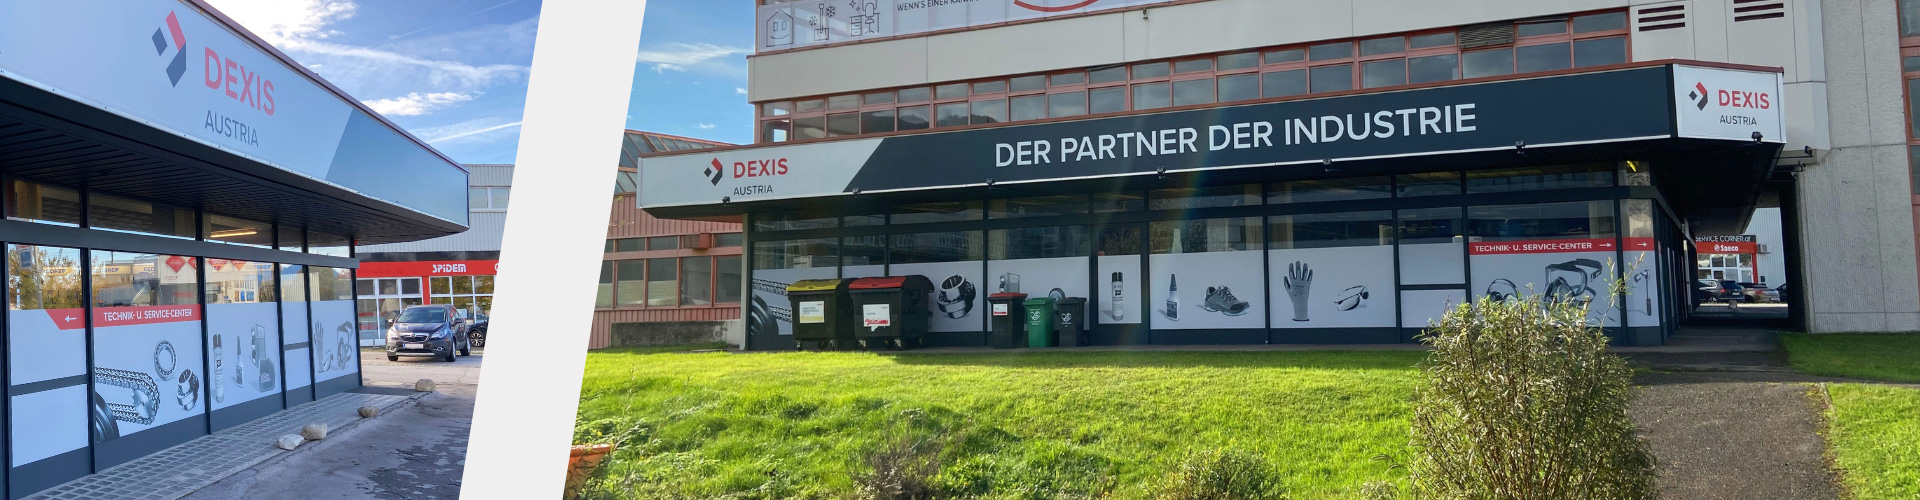 DEXIS Austria Salzburg | großes Sortiment, Top-Beratung